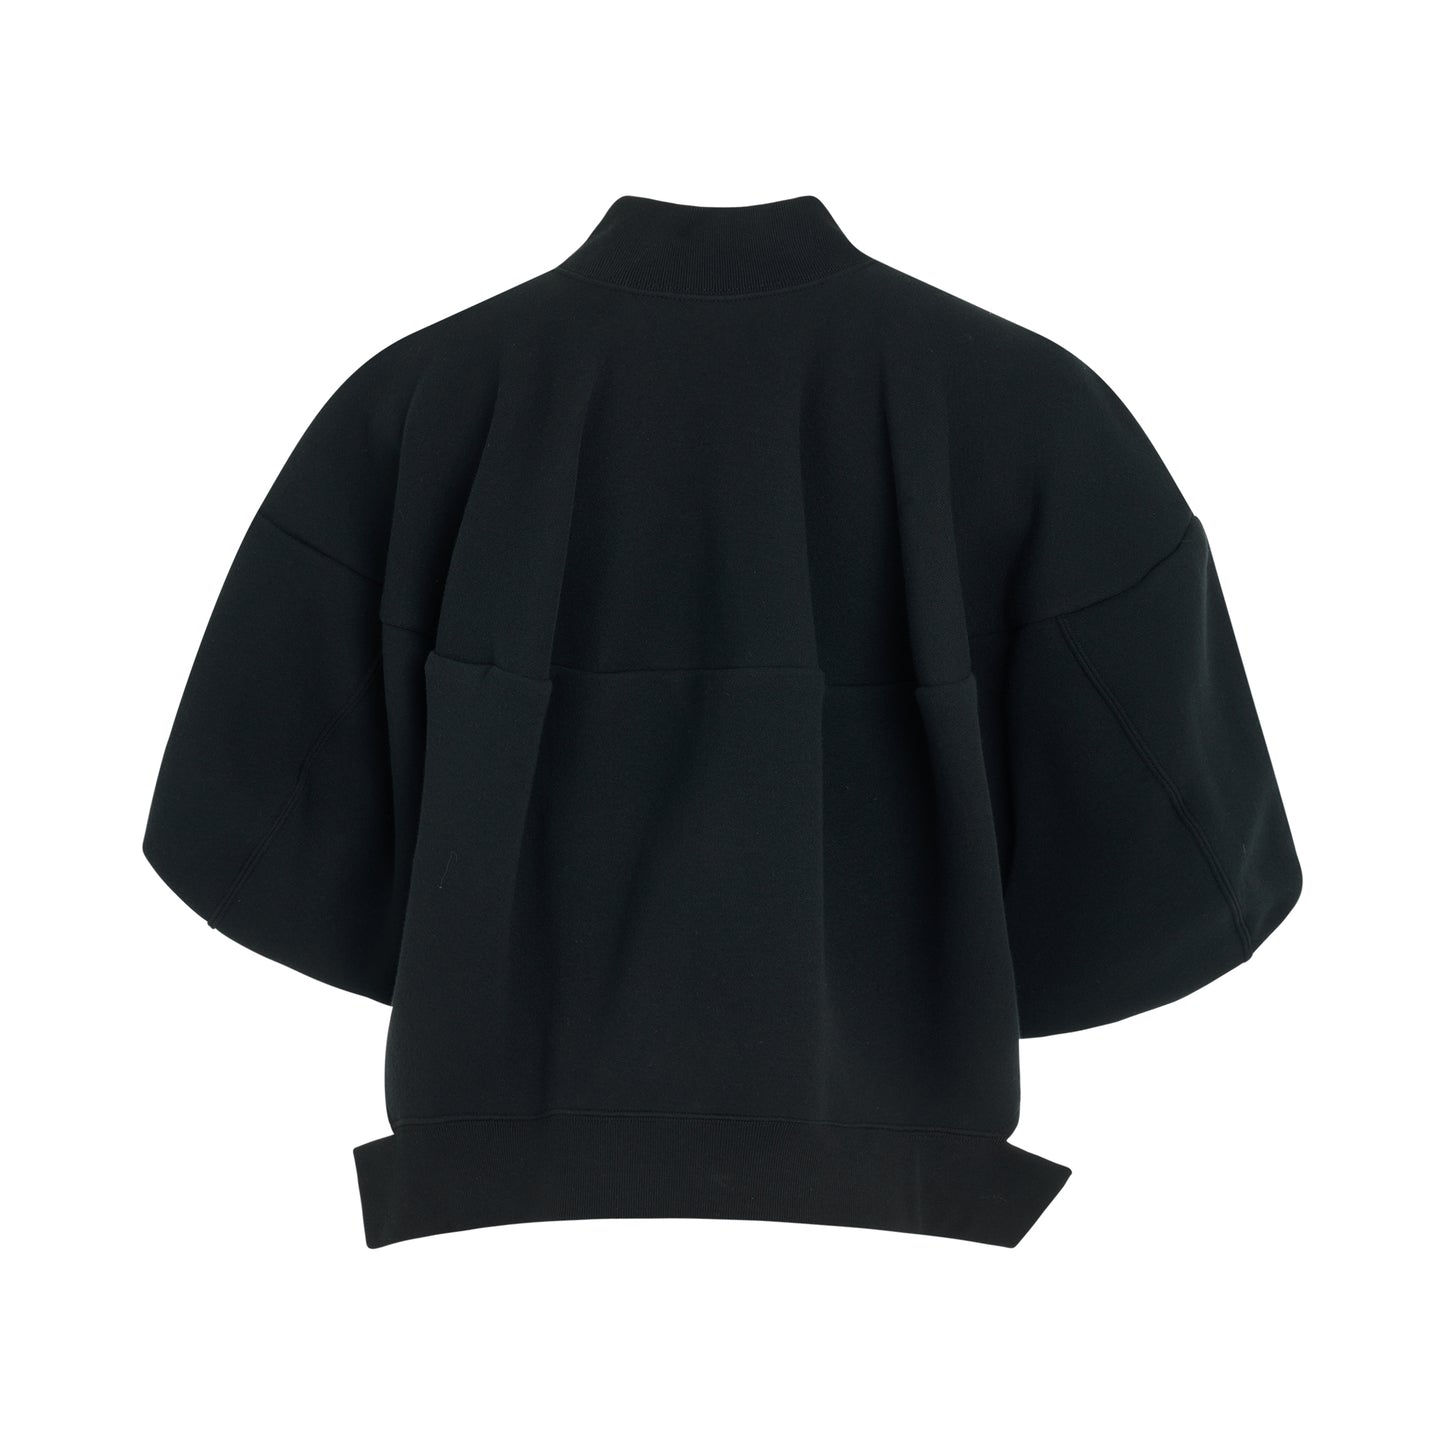 Sponge Zipped Sweatshirt Blouson in Black